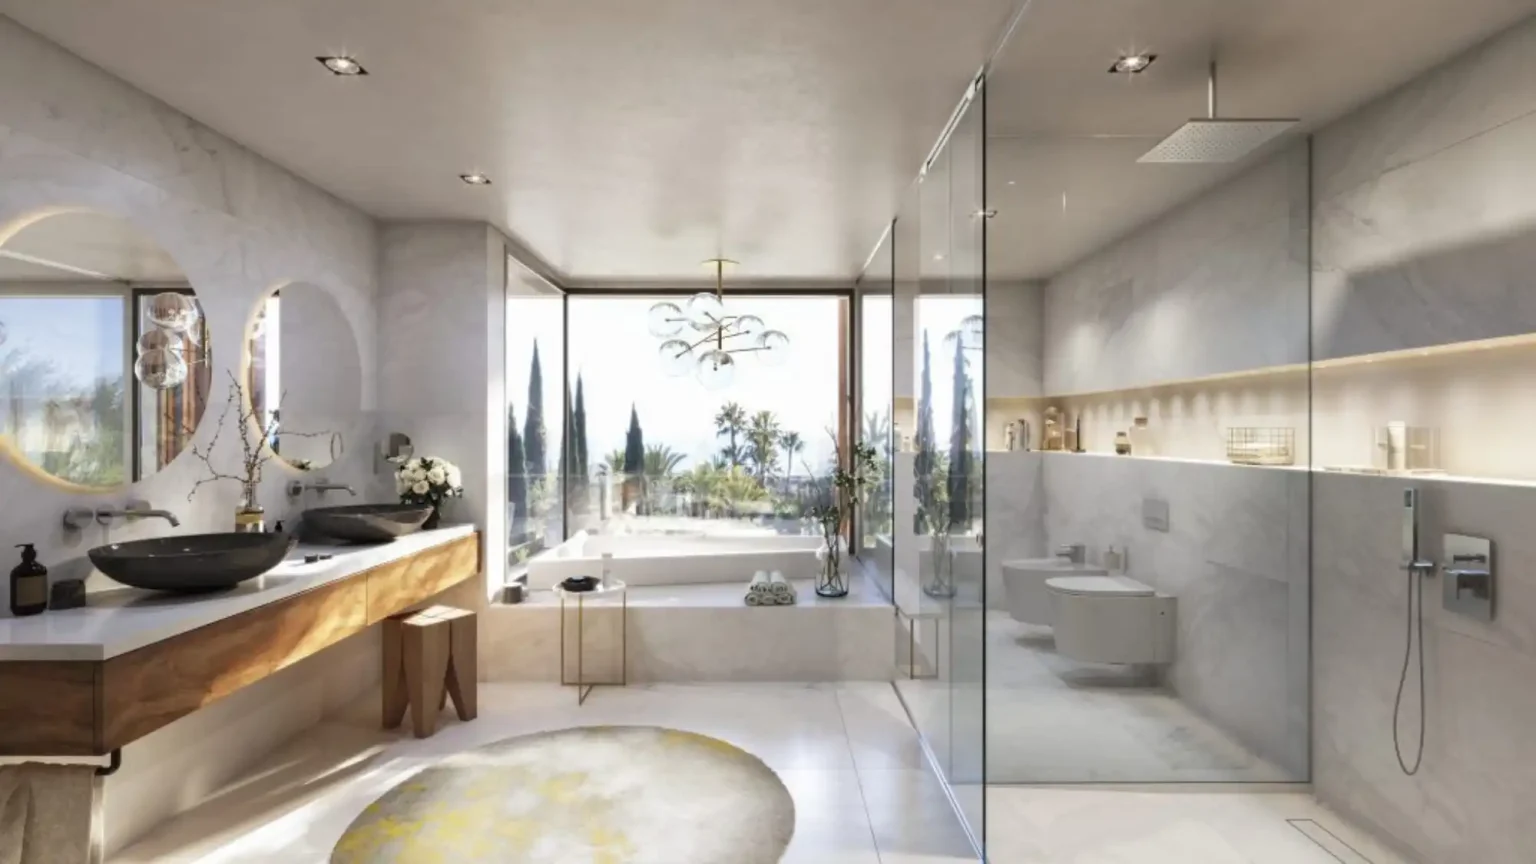 Semi-Detached-Villas-With-Views-Bathroom